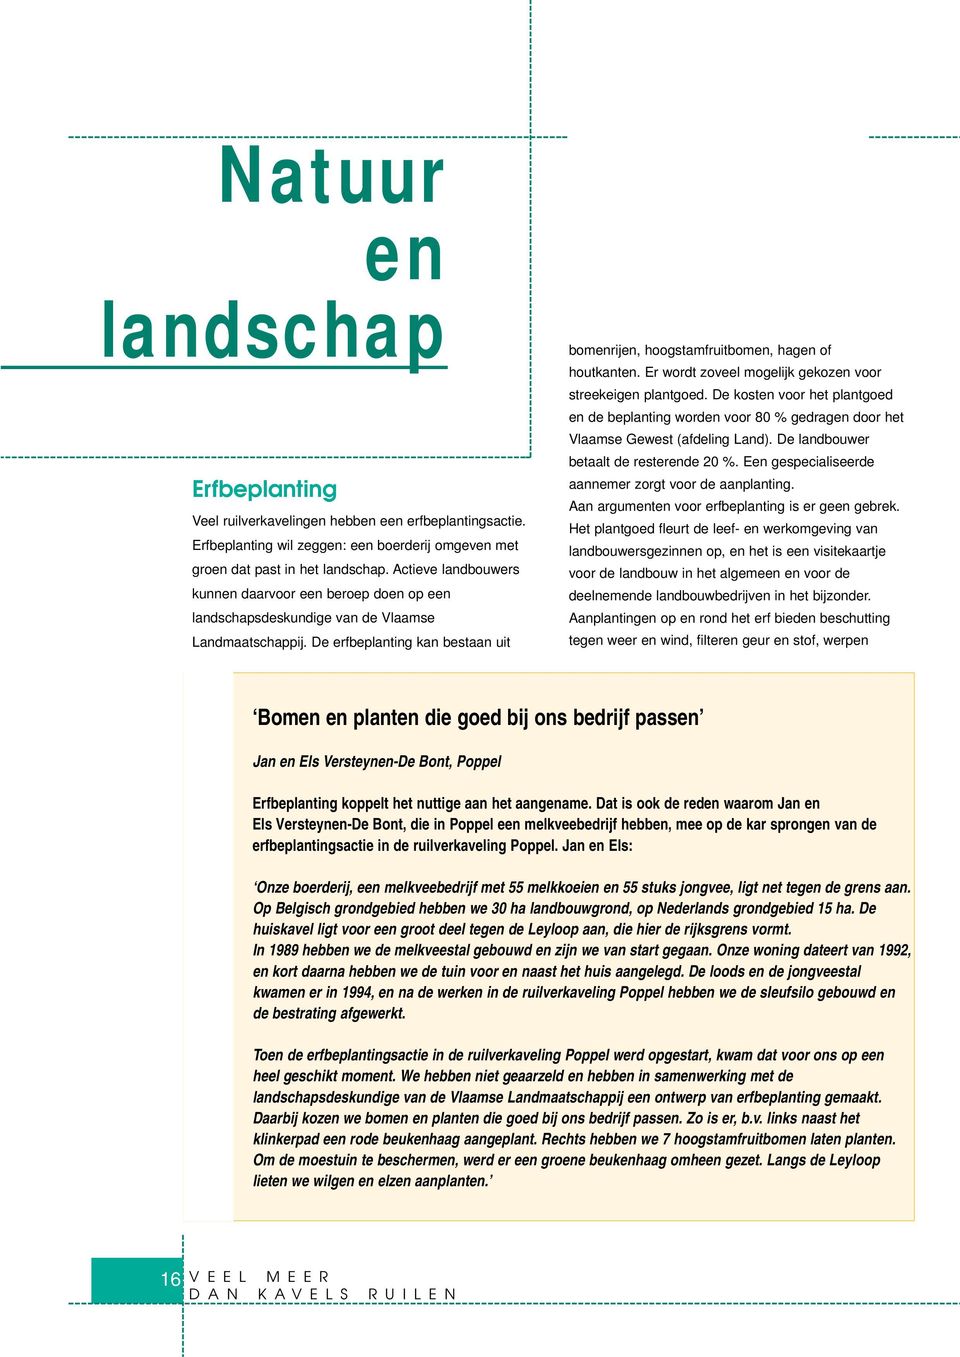 Er wordt zoveel mogelijk gekozen voor streekeigen plantgoed. De kosten voor het plantgoed en de beplanting worden voor 80 % gedragen door het Vlaamse Gewest (afdeling Land).